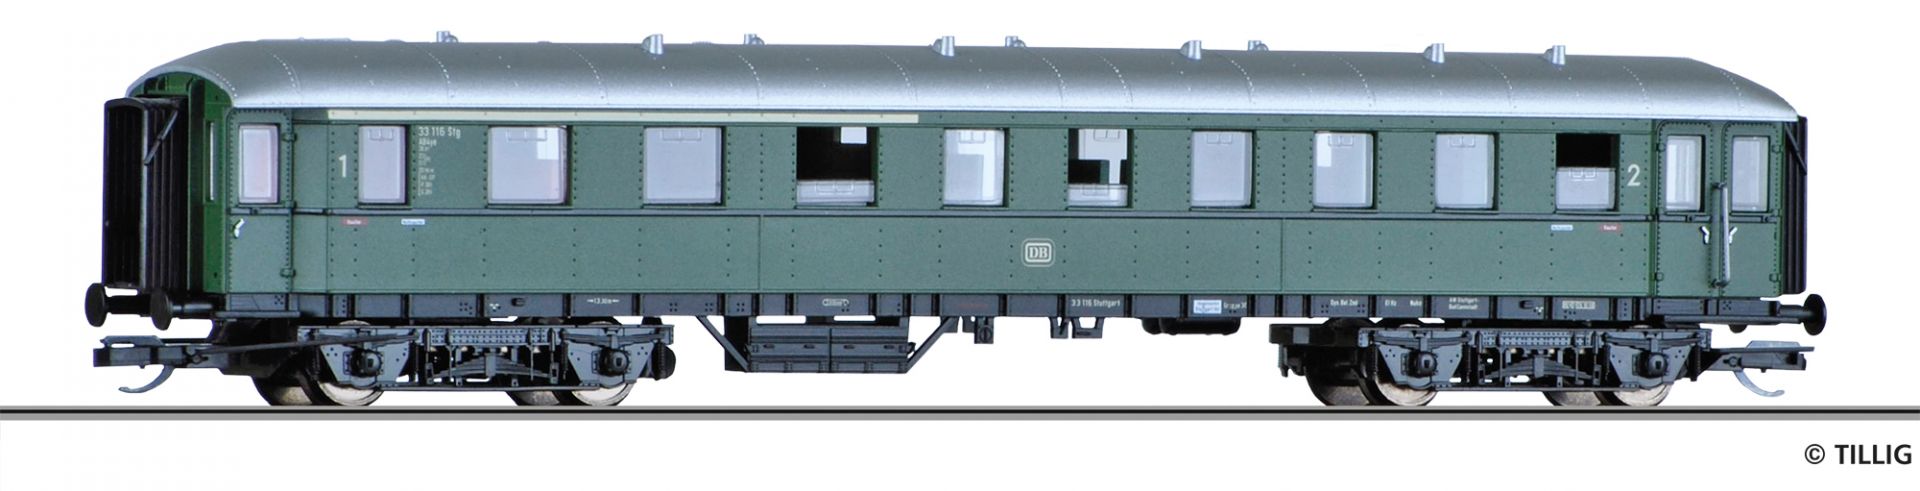 13334 | Reisezugwagen DB -werksseitig ausverkauft-